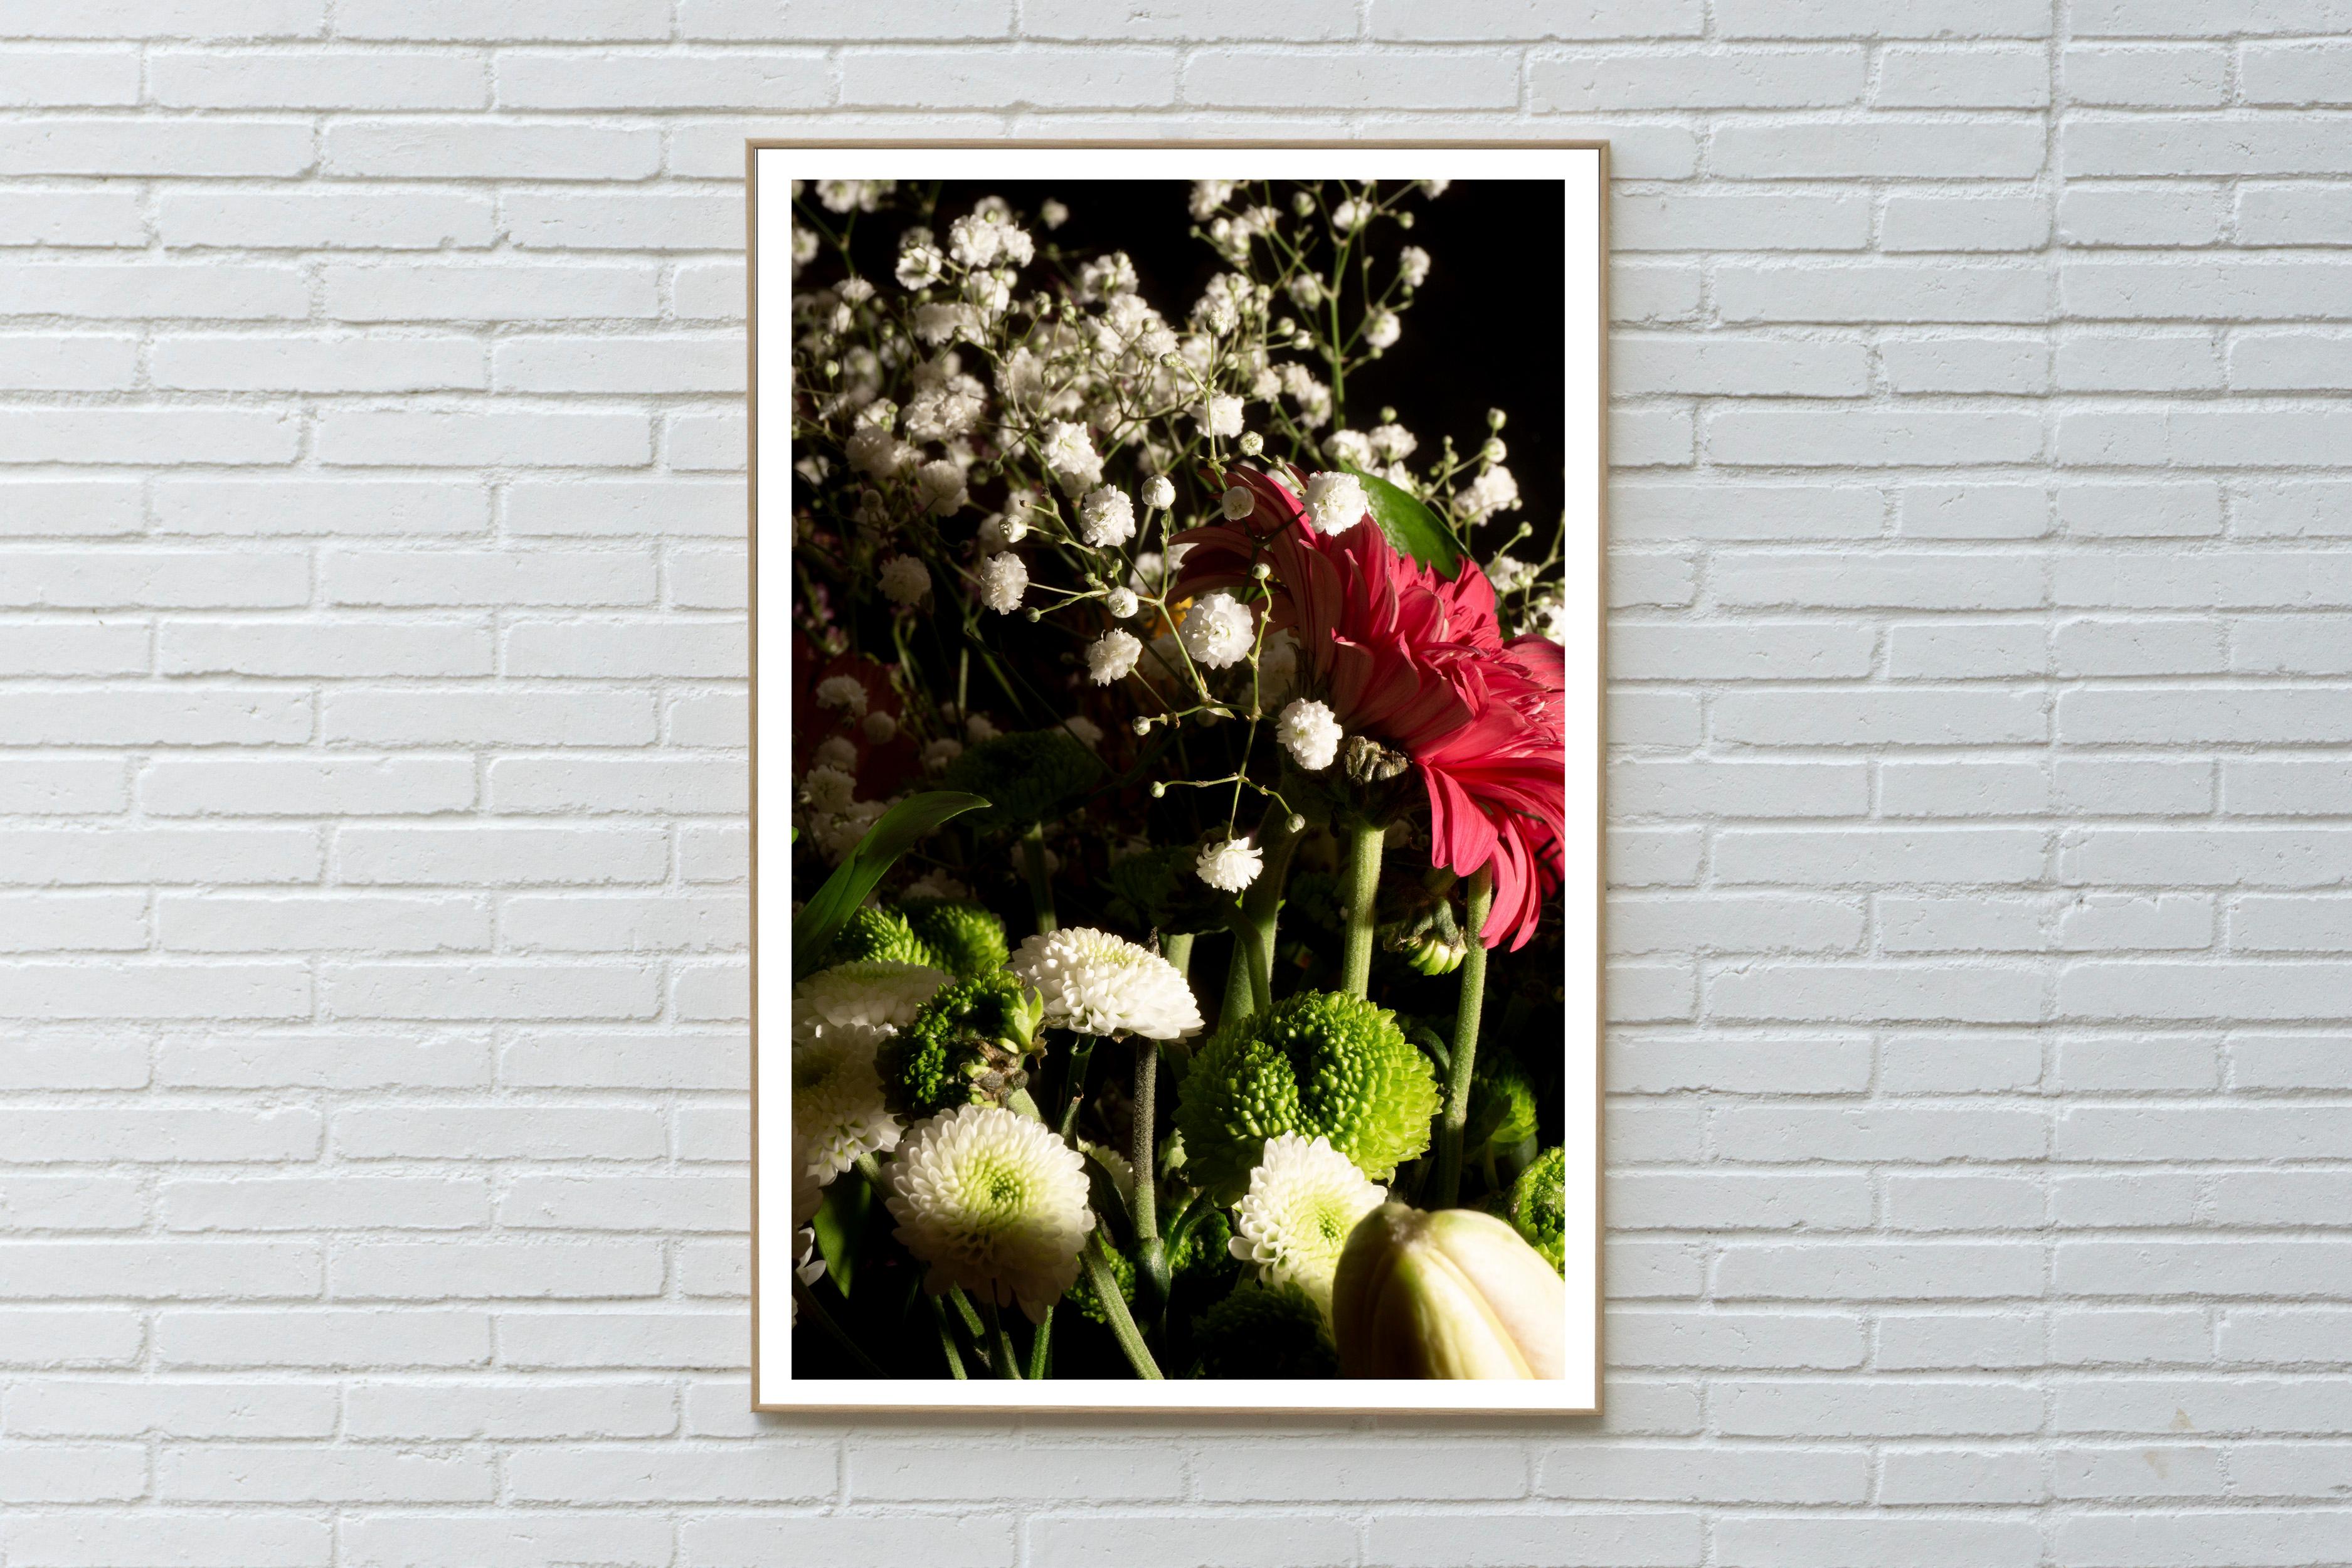 Dies ist ein exklusiver Giclée-Farbdruck in limitierter Auflage, gedruckt auf mattem Fotopapier.

Dieses exquisite Stillleben zeigt einen edlen Blumenstrauß, der mit weichem Licht wunderschön beleuchtet wird.

Der Druck misst insgesamt 36 x 24 Zoll,